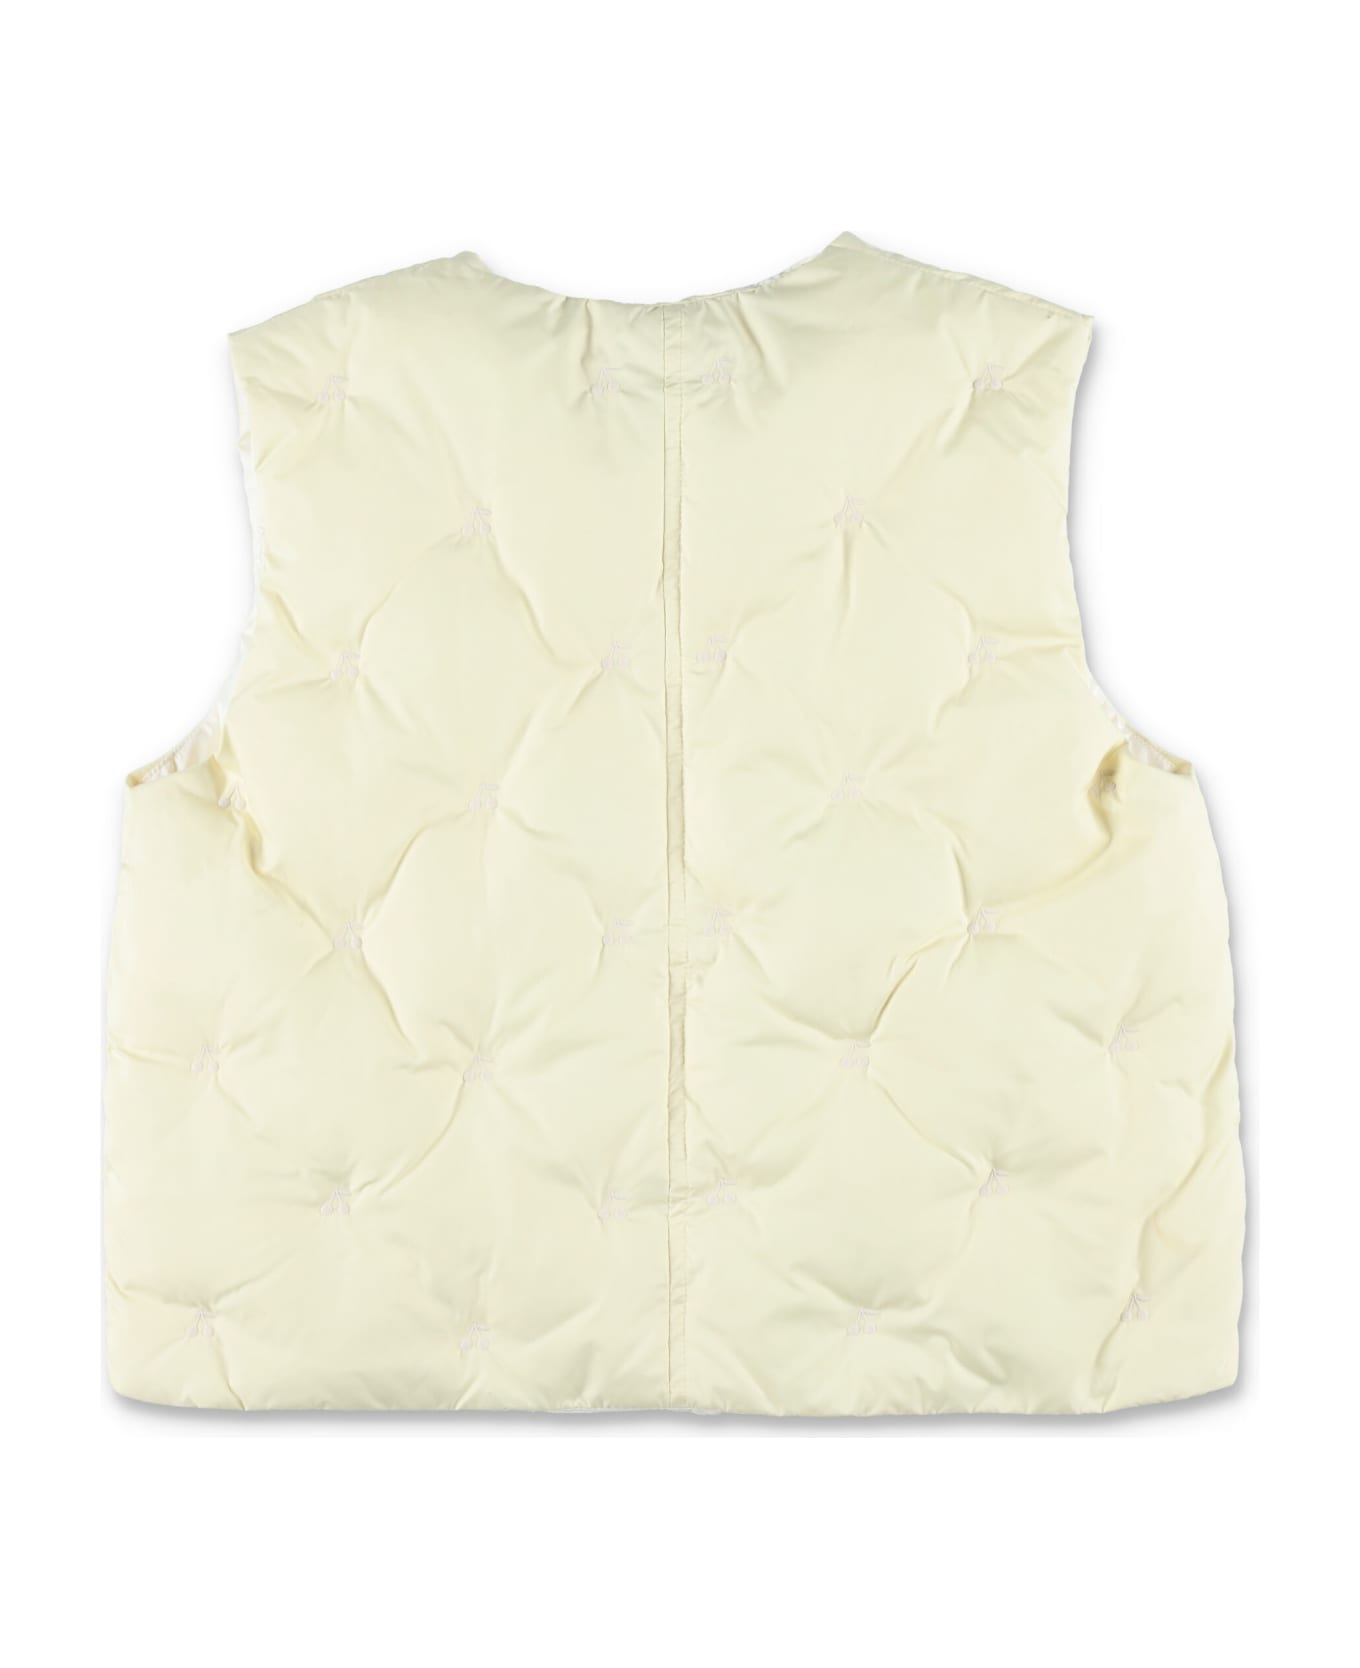 Bonpoint Vest Jacket - JAUNE CLAIR